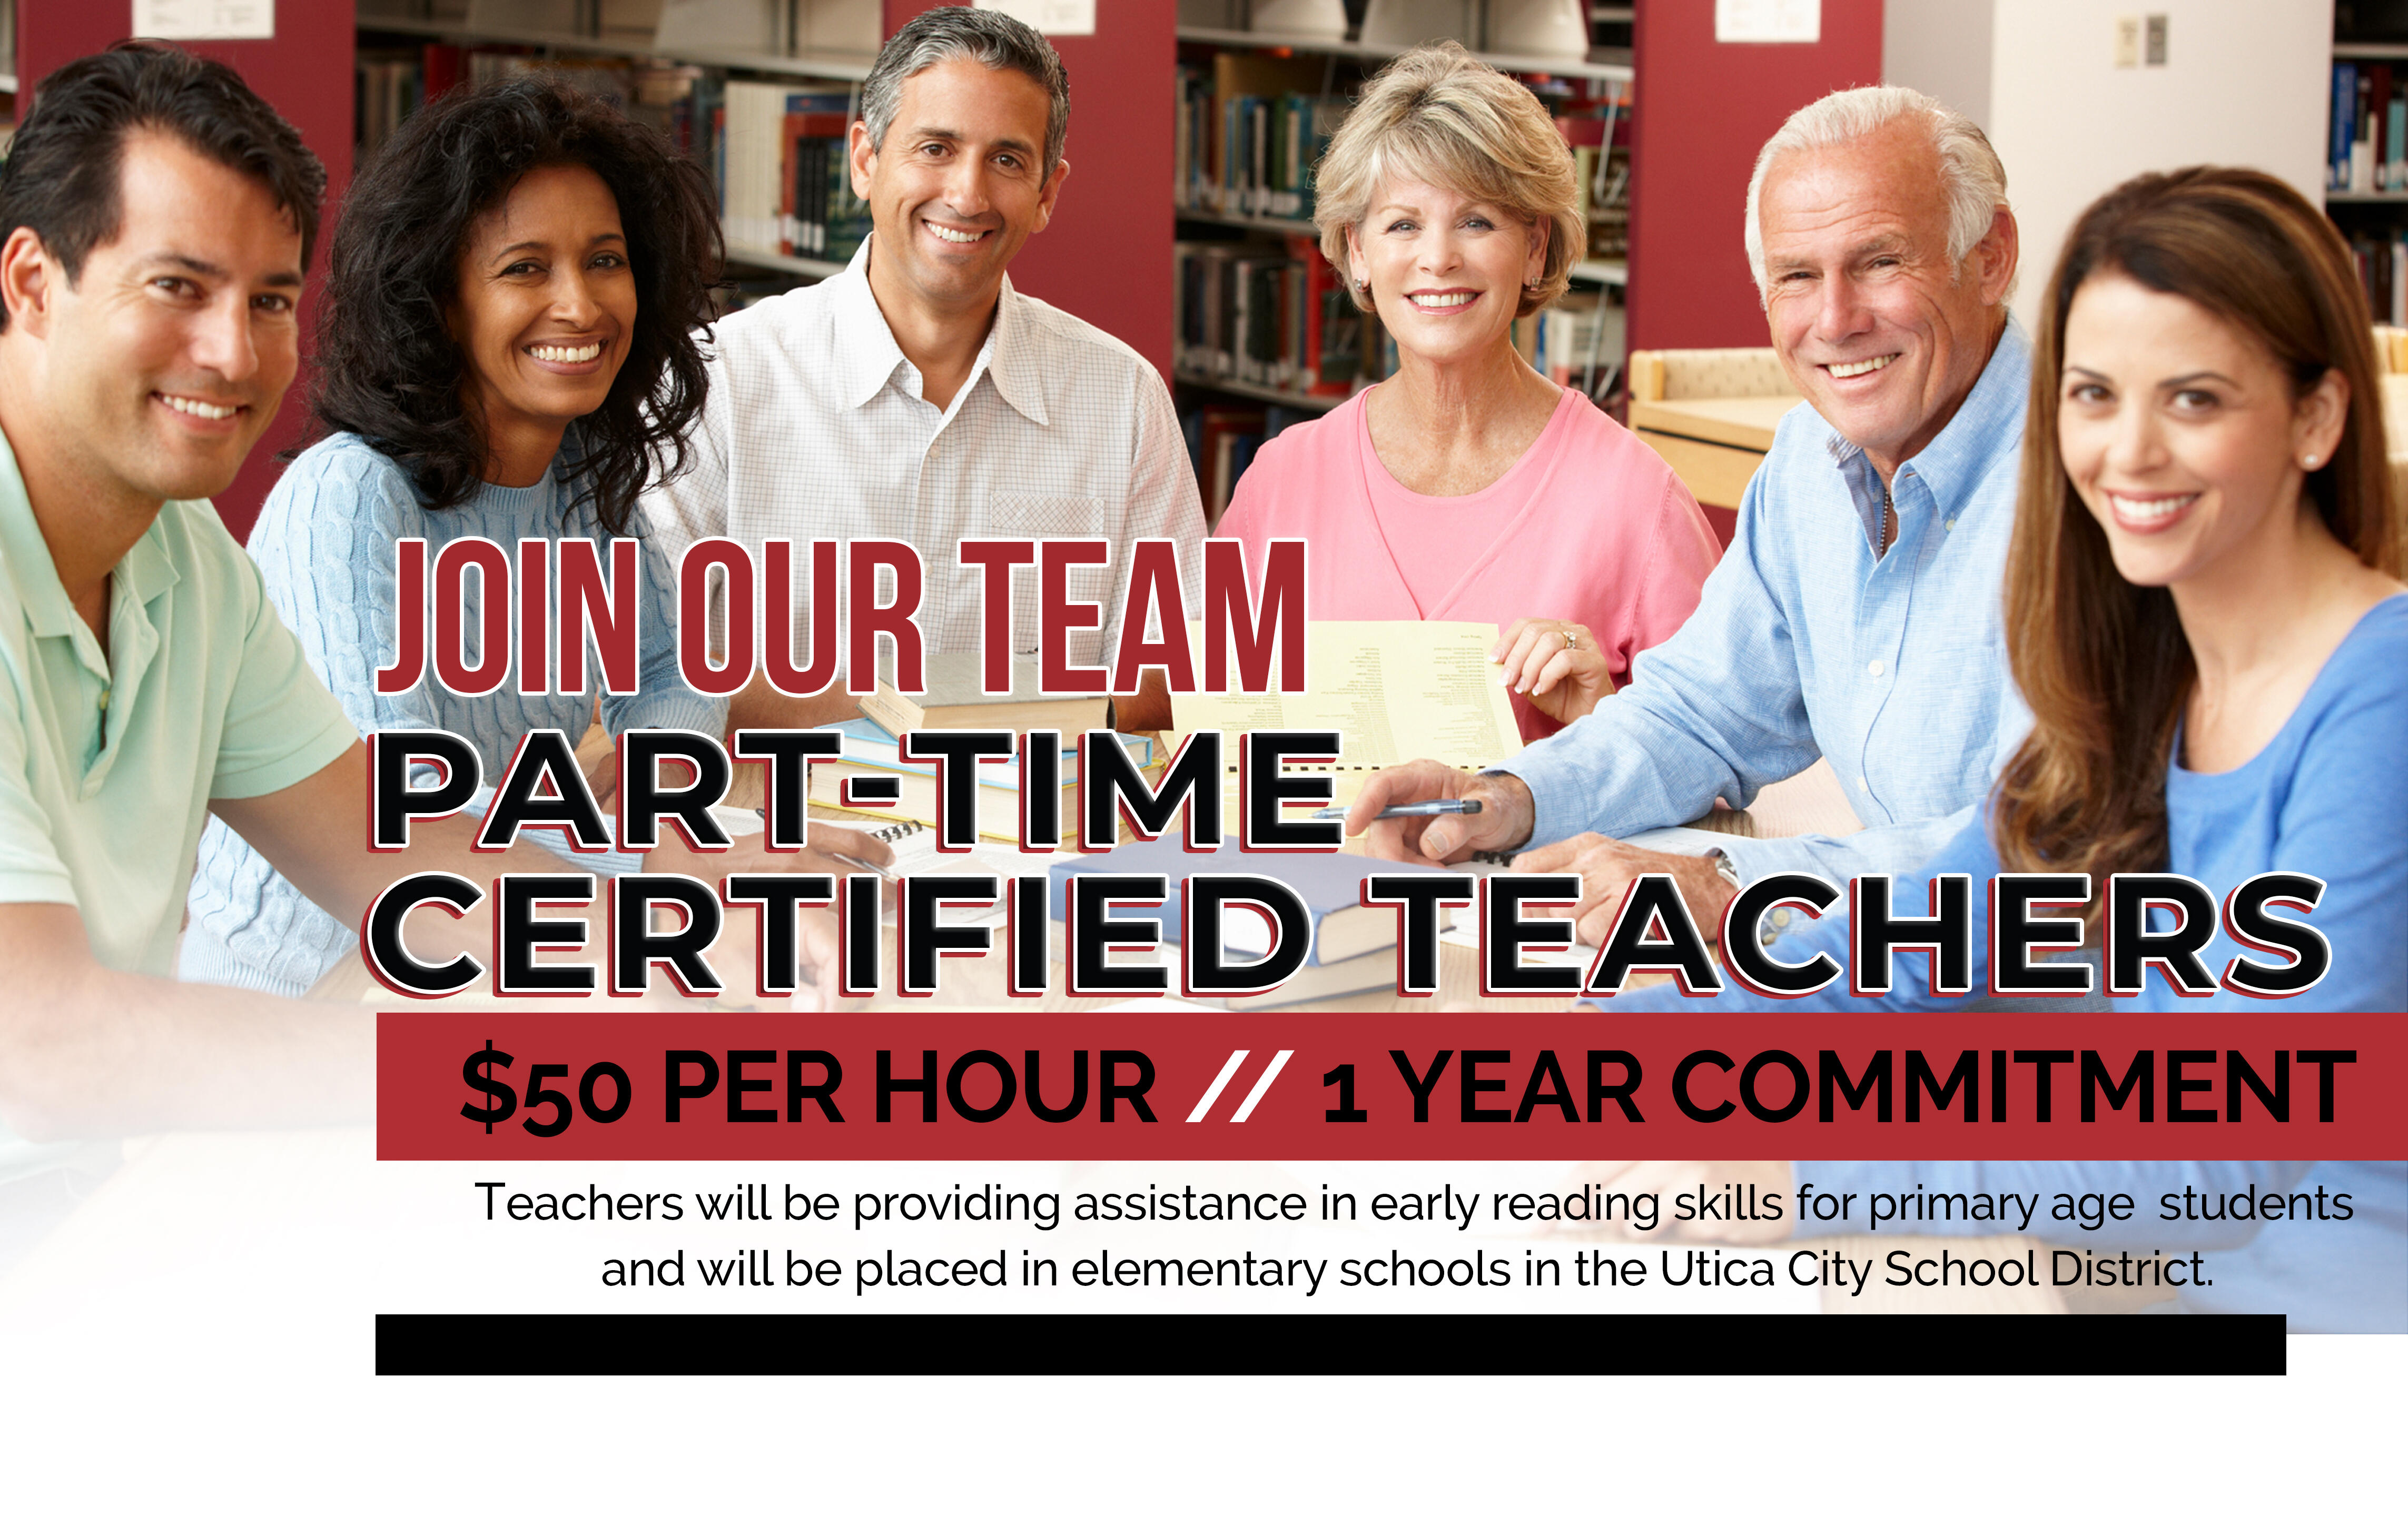 Набираємо сертифікованих викладачів на неповний робочий день - натисніть для отримання флаєра!